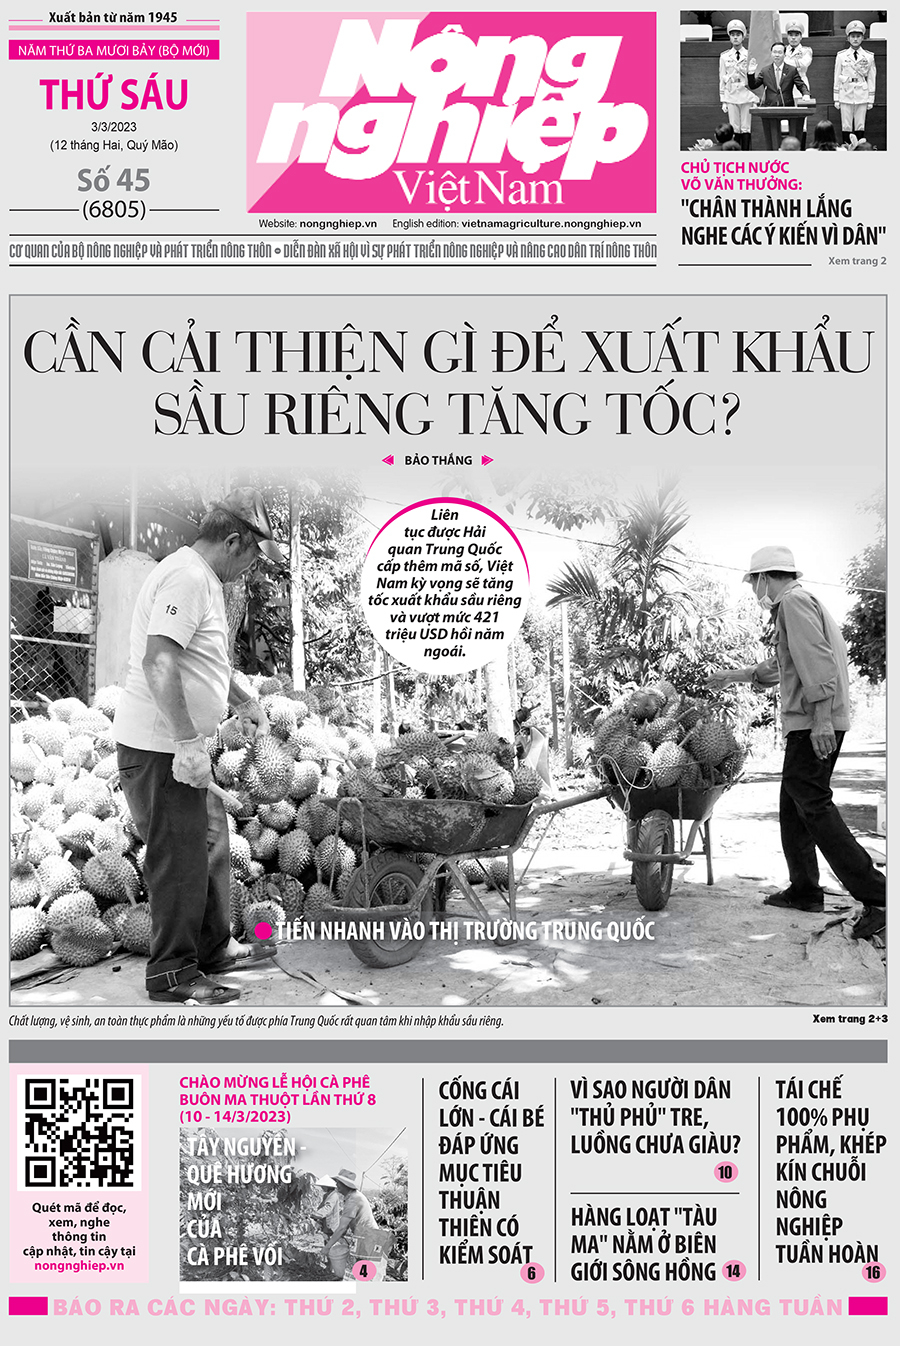 Tin nông nghiệp nổi bật trên số 45, báo Nông nghiệp Việt Nam ngày 3/3/2023